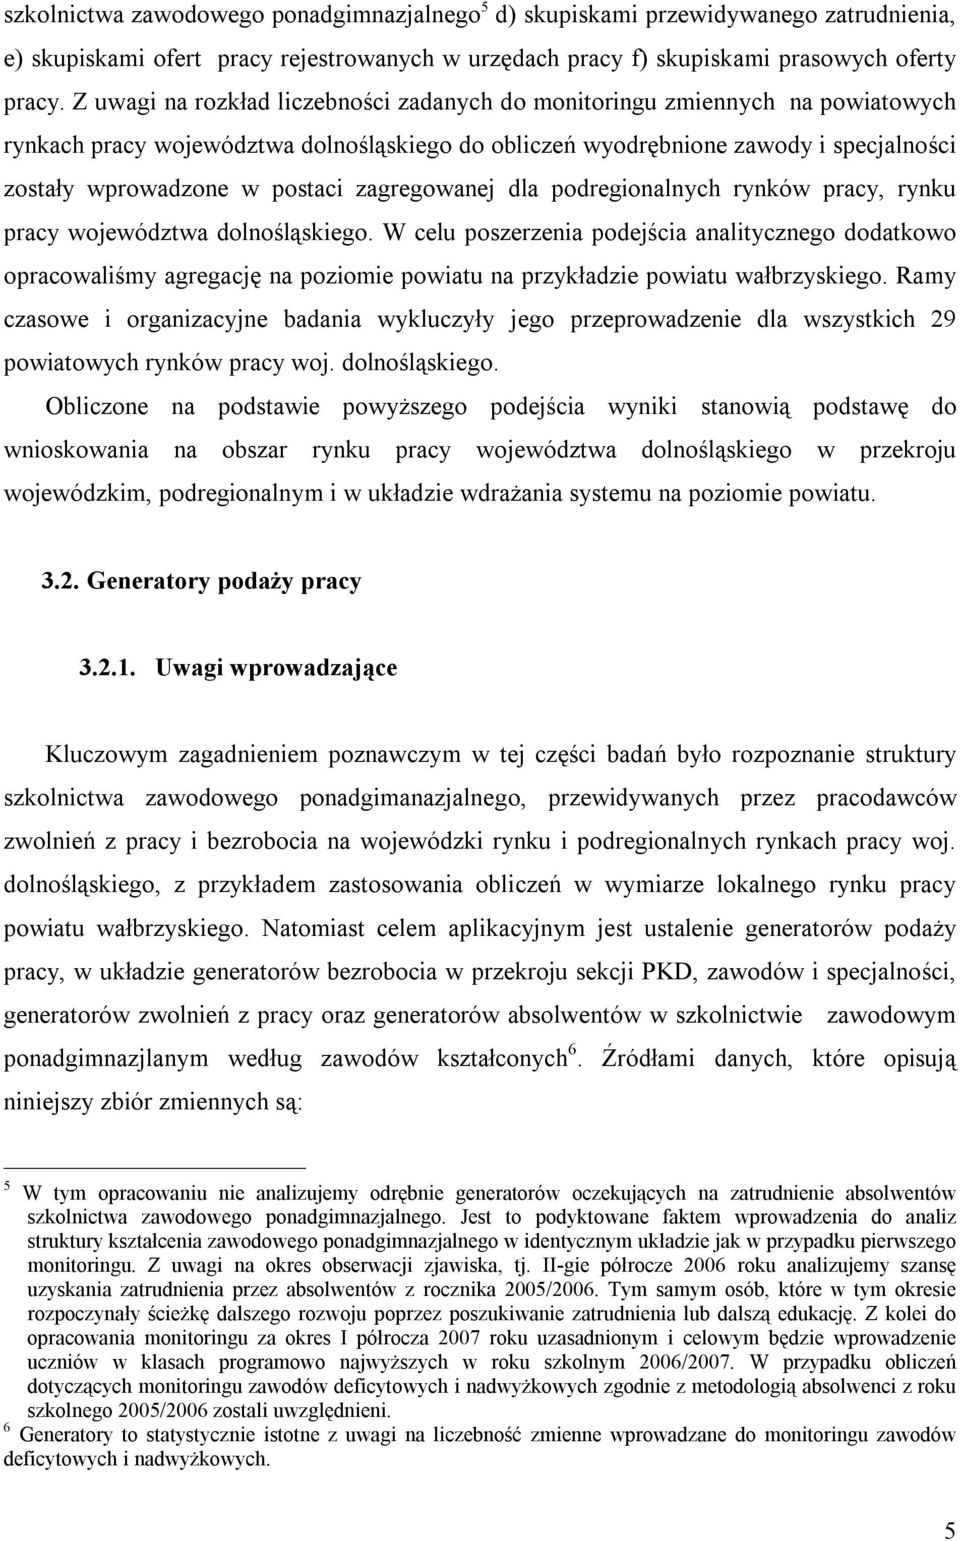 zagregowanej dla podregionalnych rynków pracy, rynku pracy województwa dolnośląskiego.